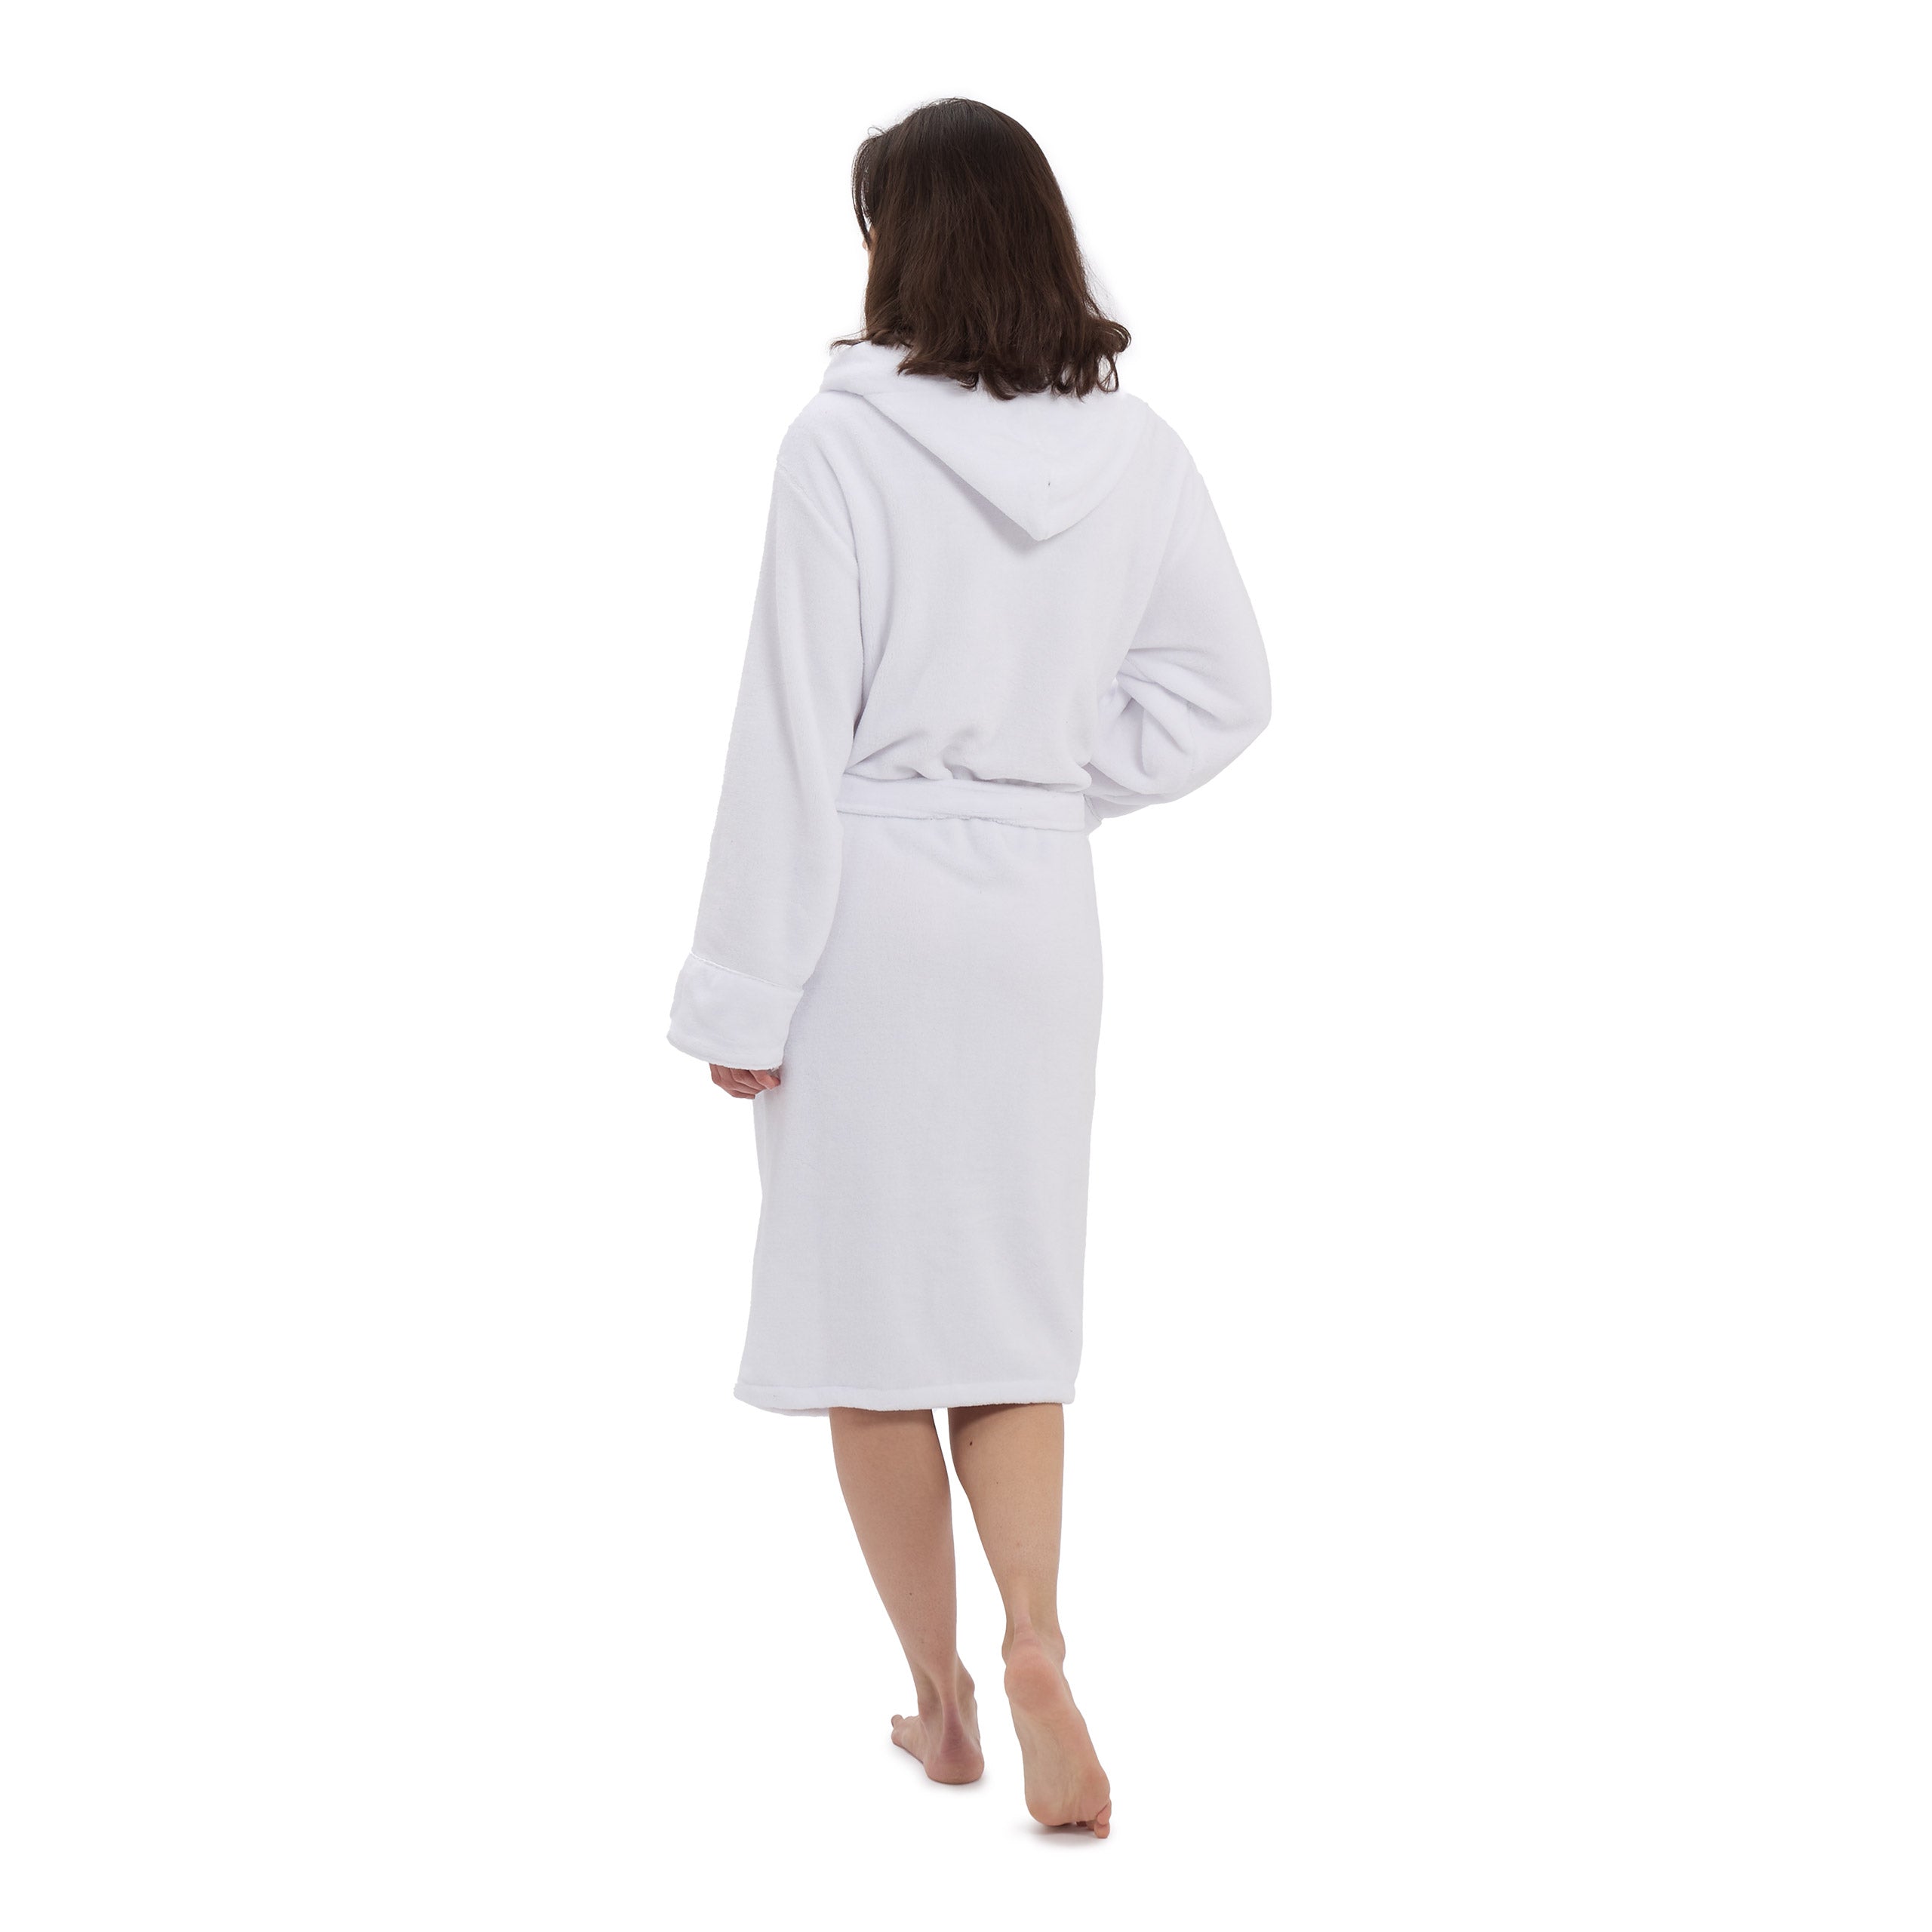 Luxury Mikrofaser Bademantel mit Kapuze für Damen und Herren - Weiß - Größe M